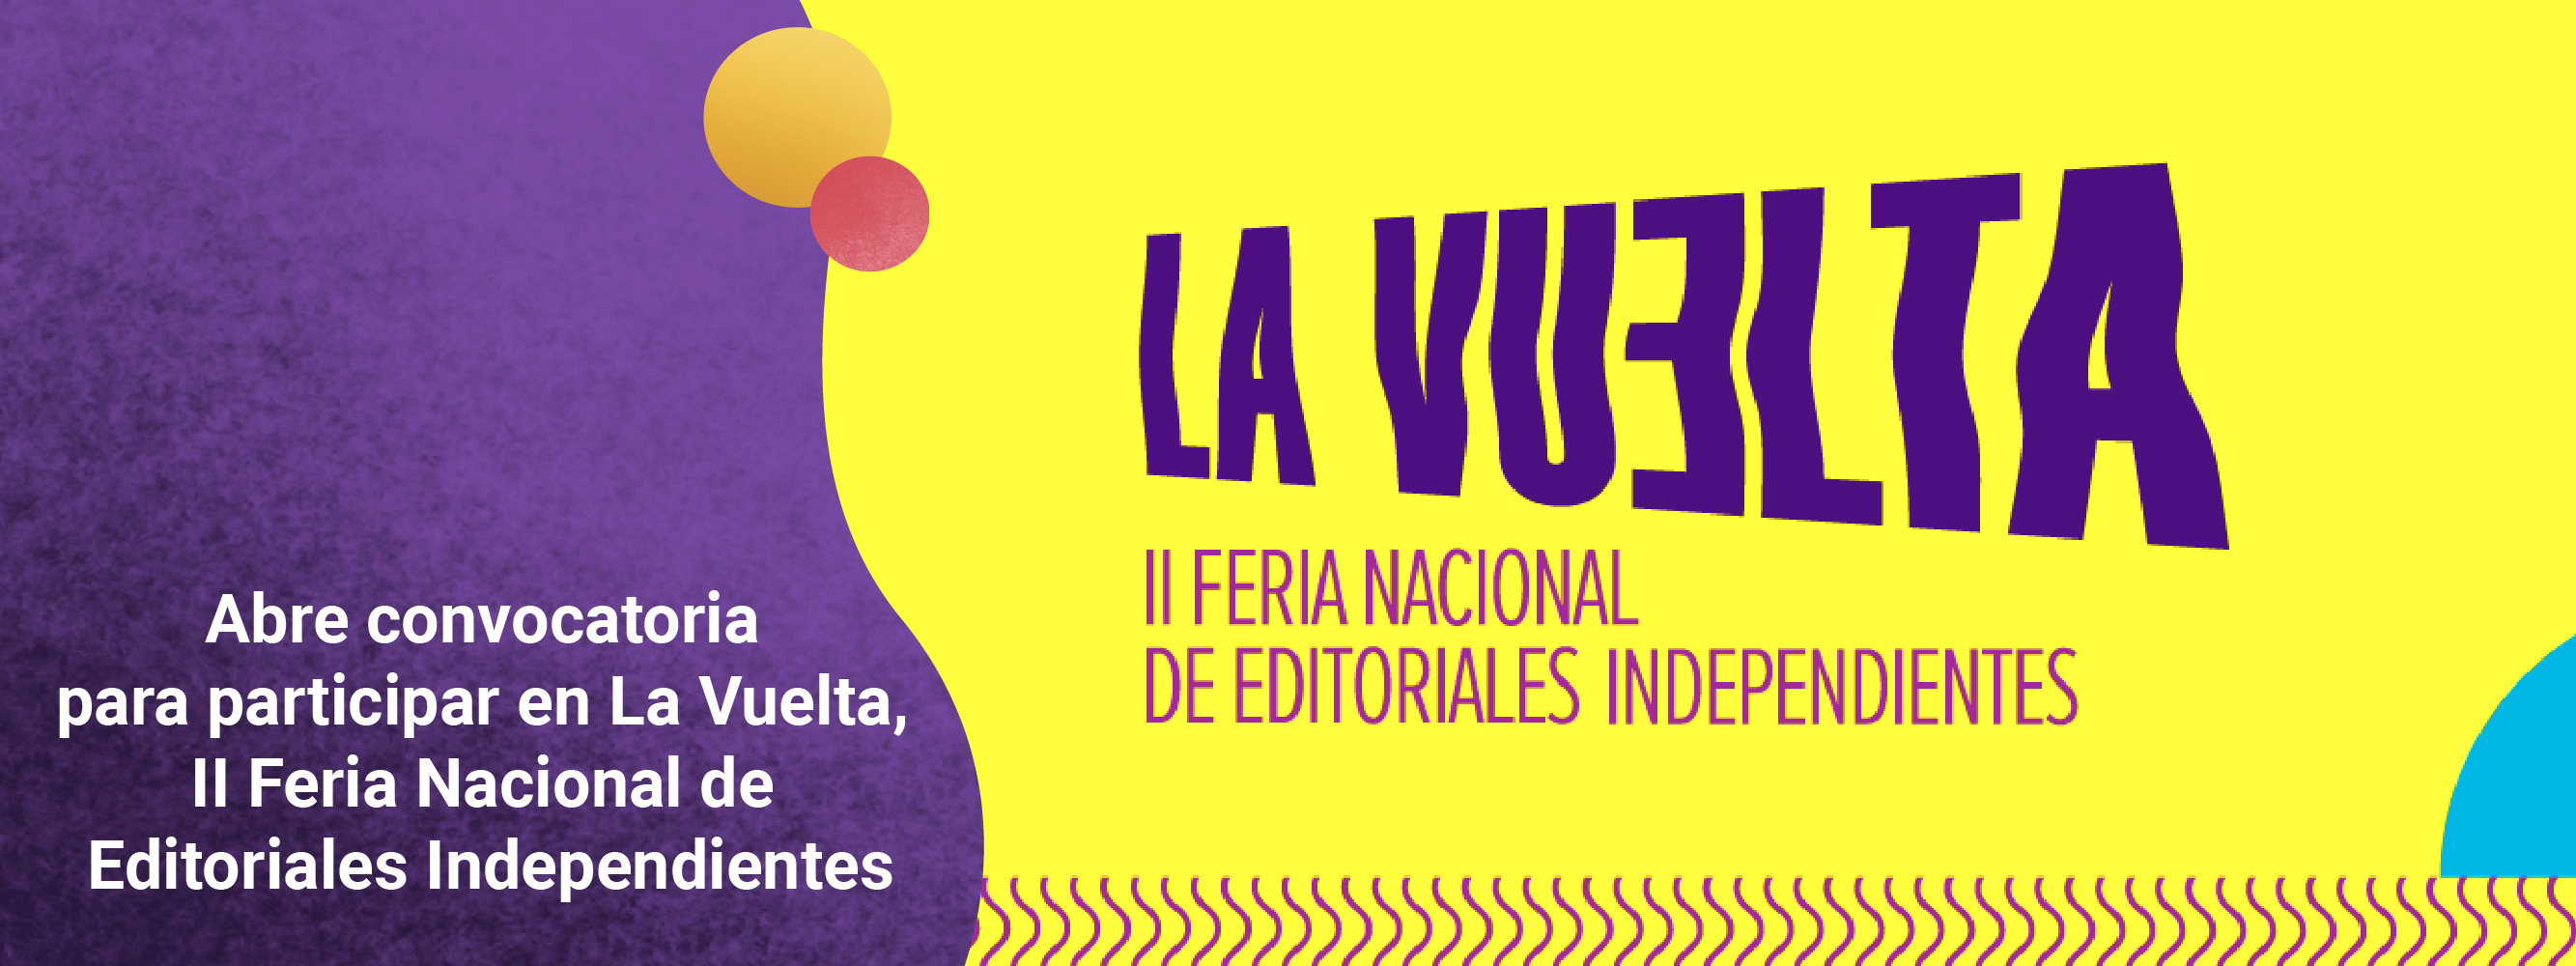 Abre la convocatoria para participar en La Vuelta, II Feria Nacional de Editoriales Independientes